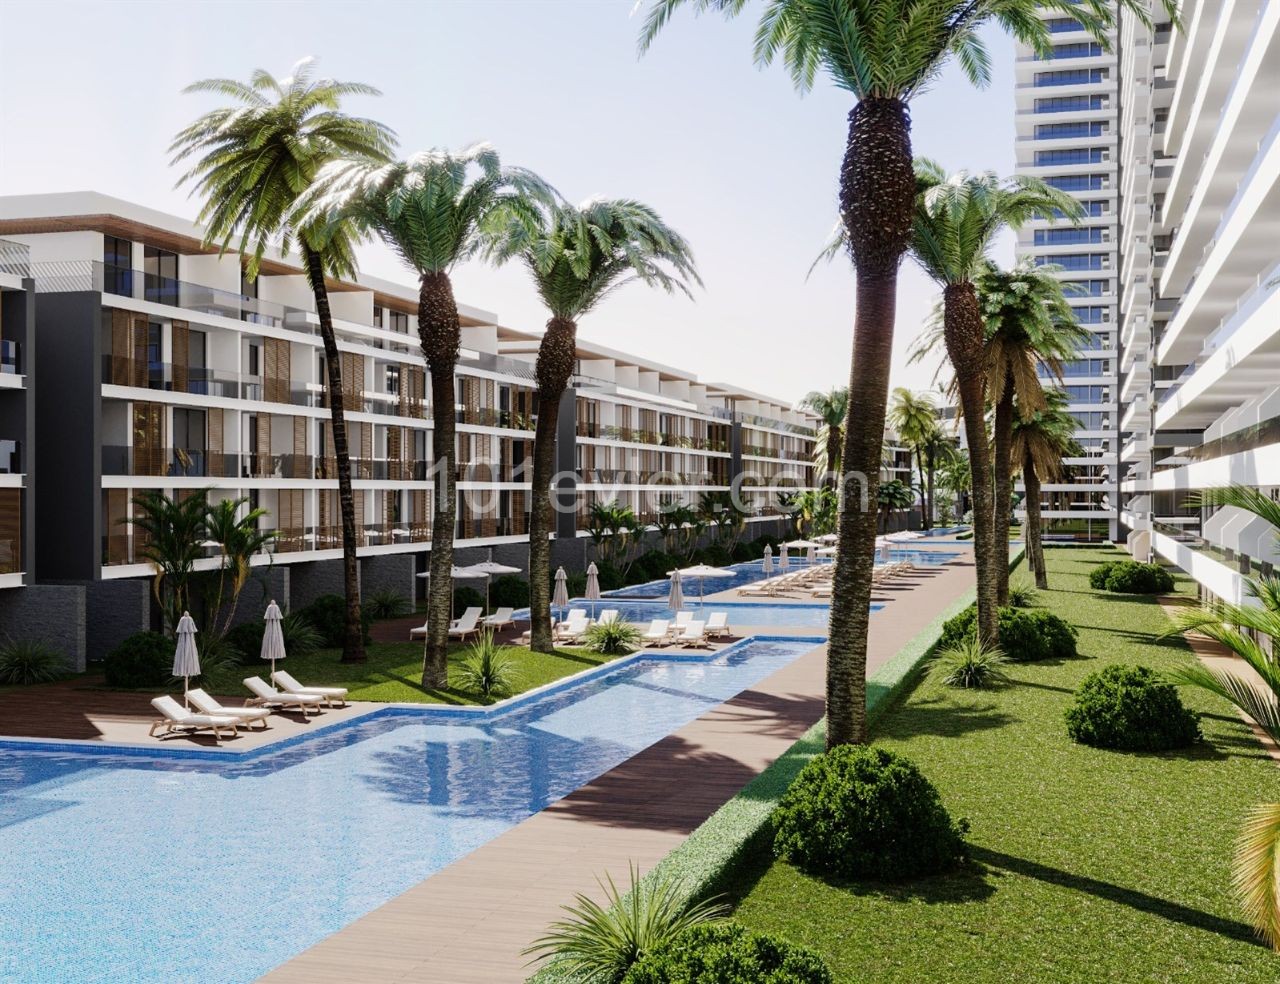 Полностью меблированные апартаменты Ultralux для продажи с инвестициями в самый прибыльный и беспрецедентный проект Кипра в ТРСК ** 